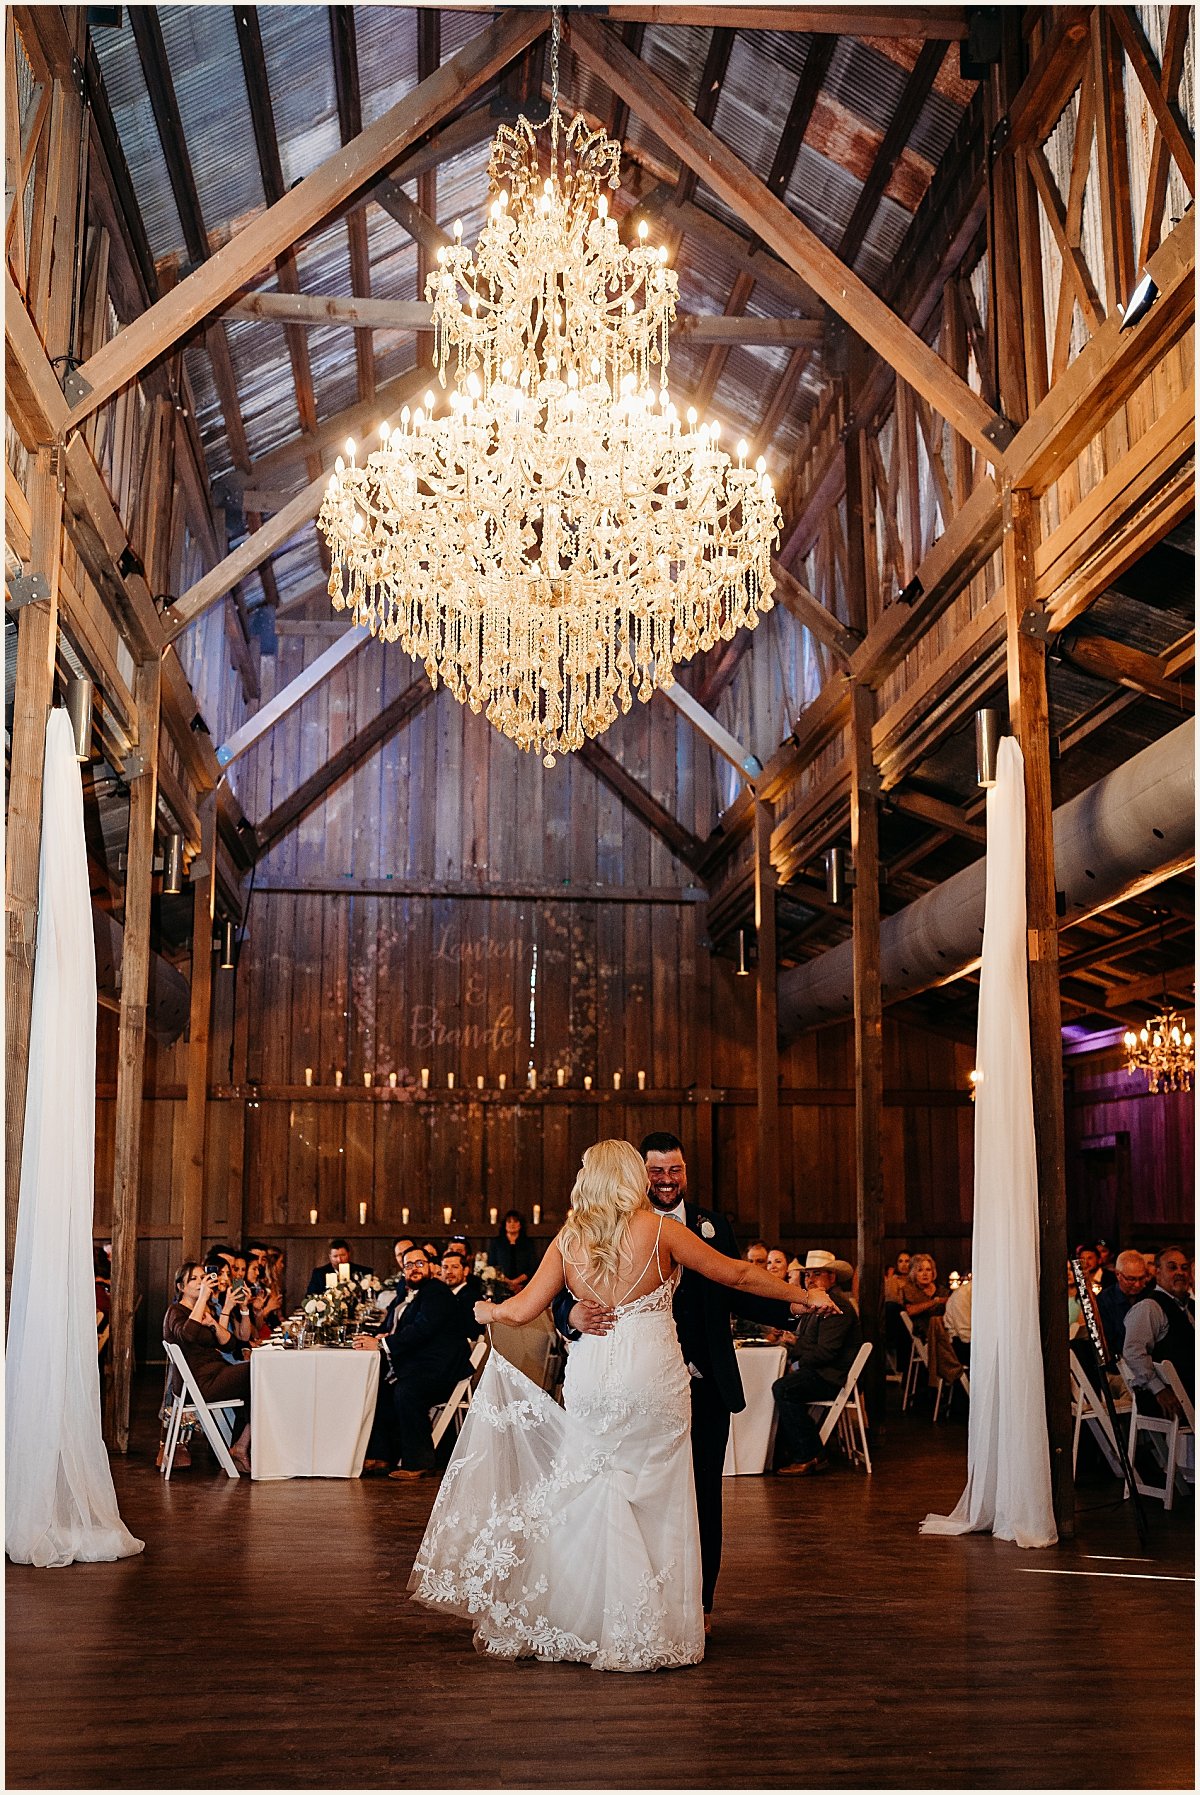 Bride and groom first dance | Lauren Crumpler Photography | Texas Wedding Photographer